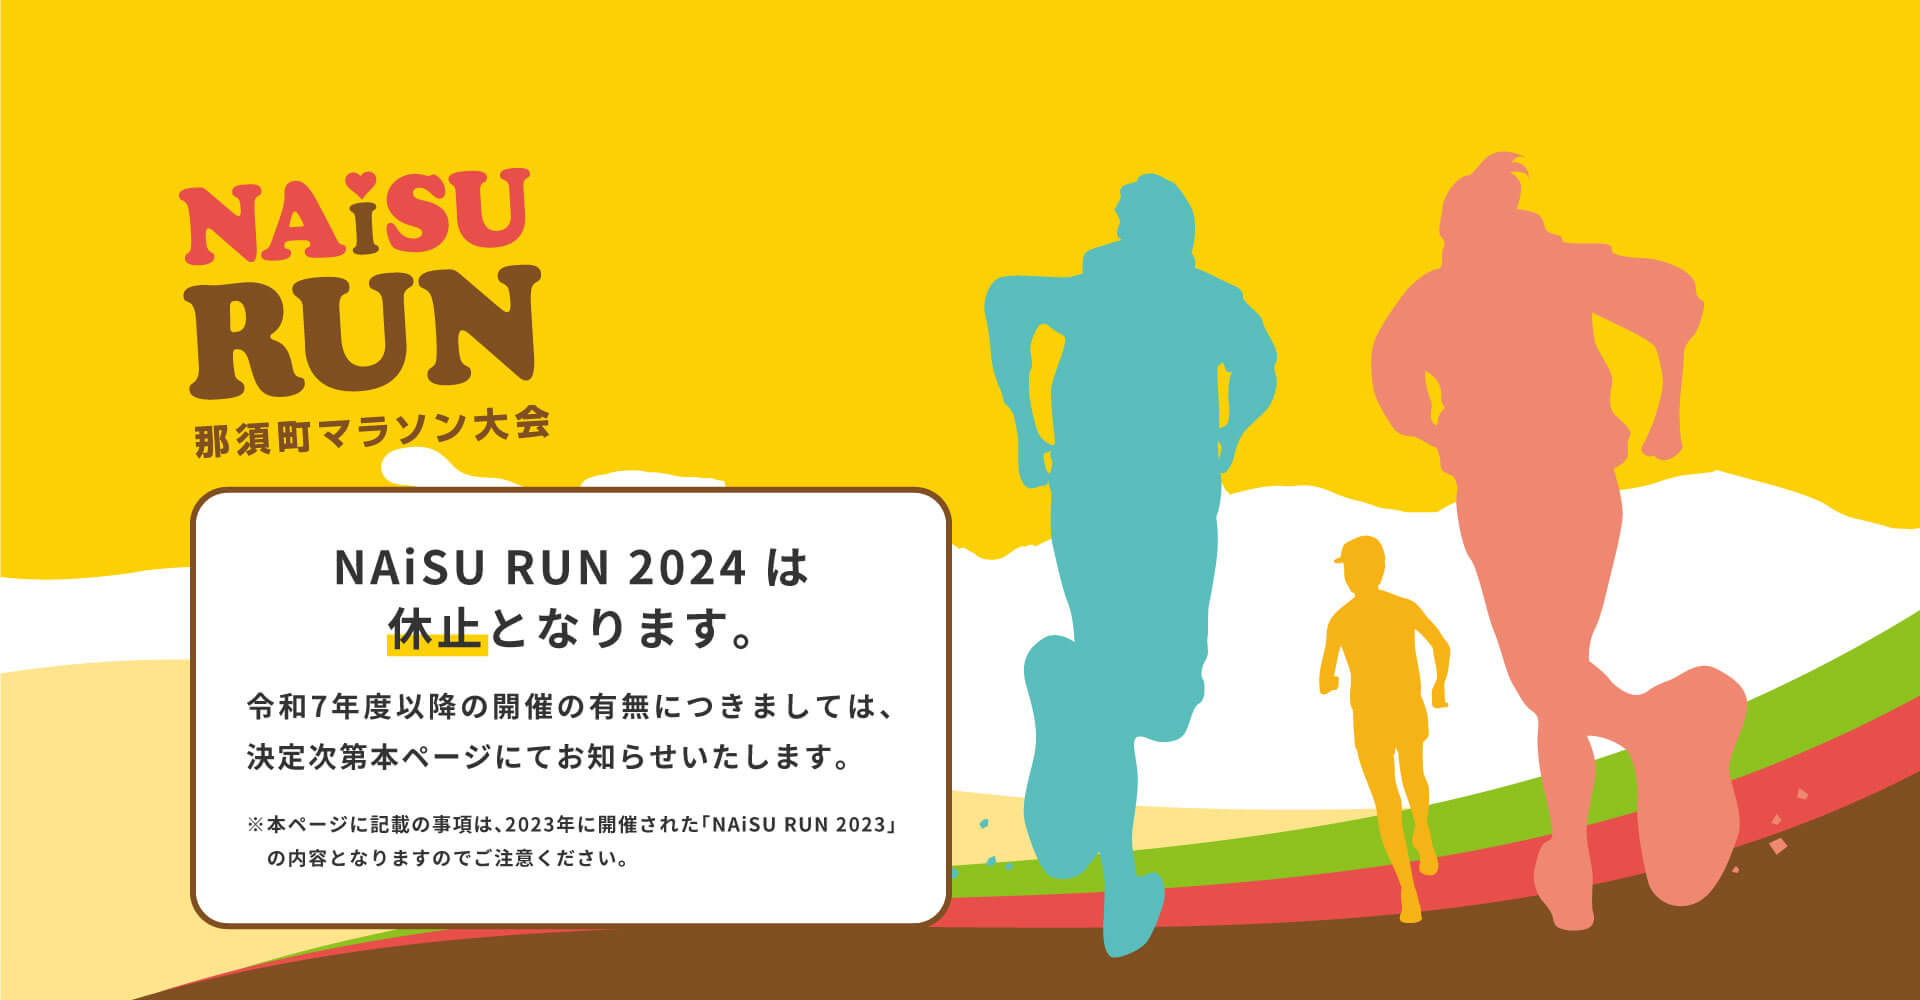 那須町マラソン大会　NAiSU RUN